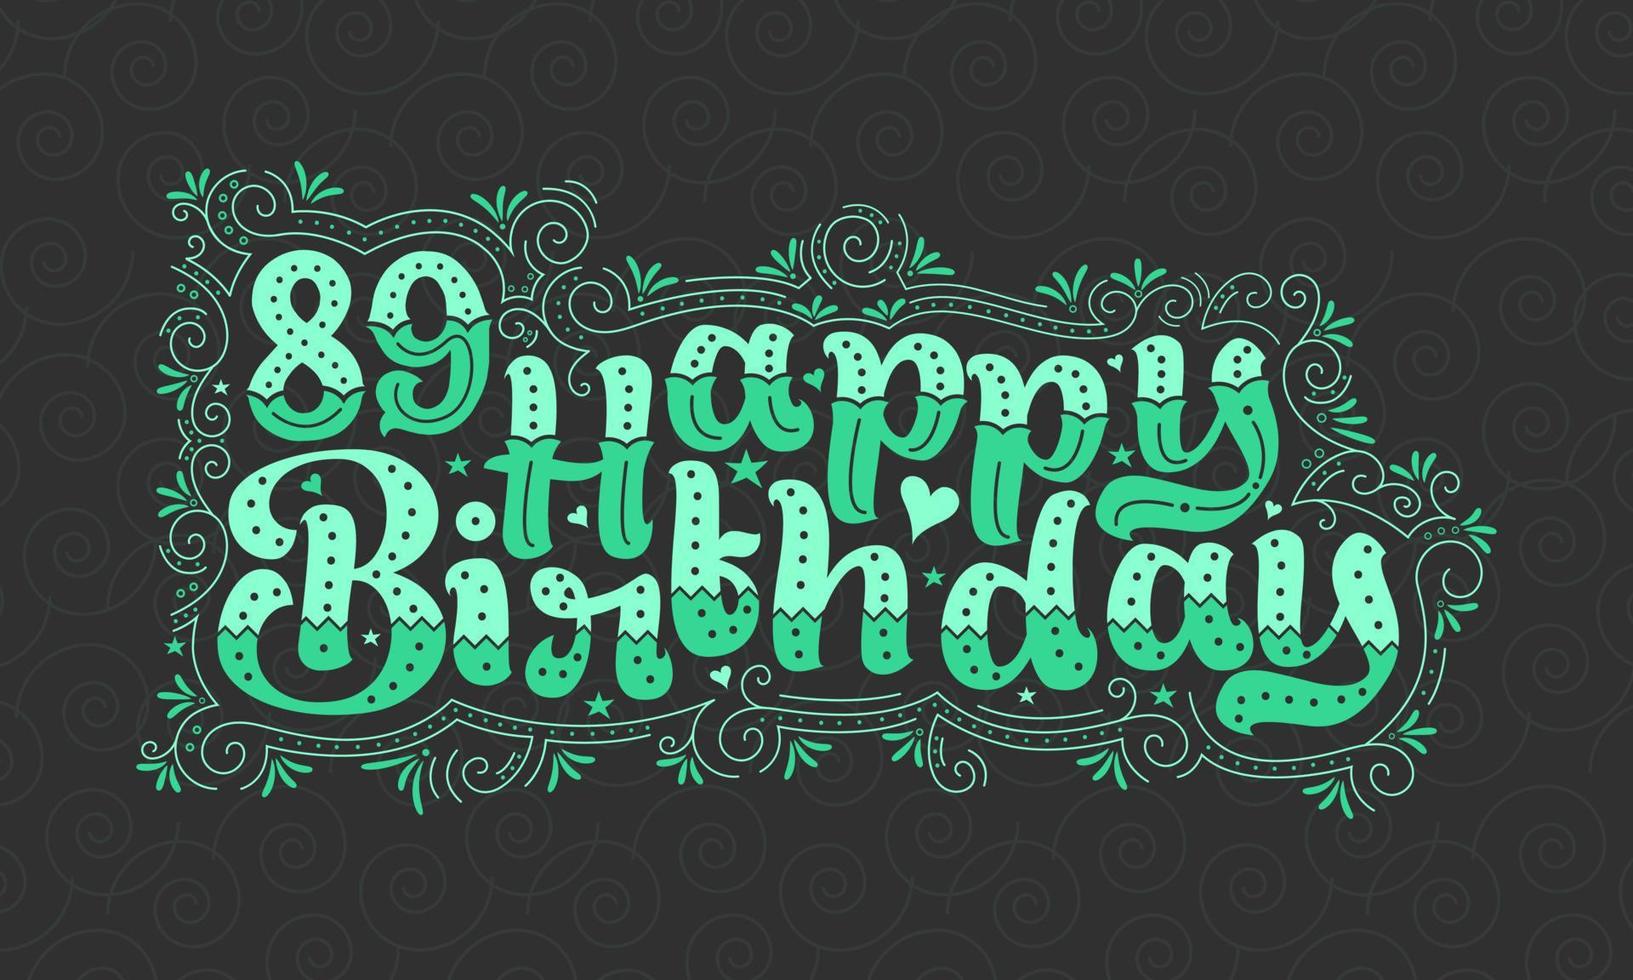 89e gelukkige verjaardag belettering, 89 jaar verjaardag mooi typografieontwerp met groene stippen, lijnen en bladeren. vector